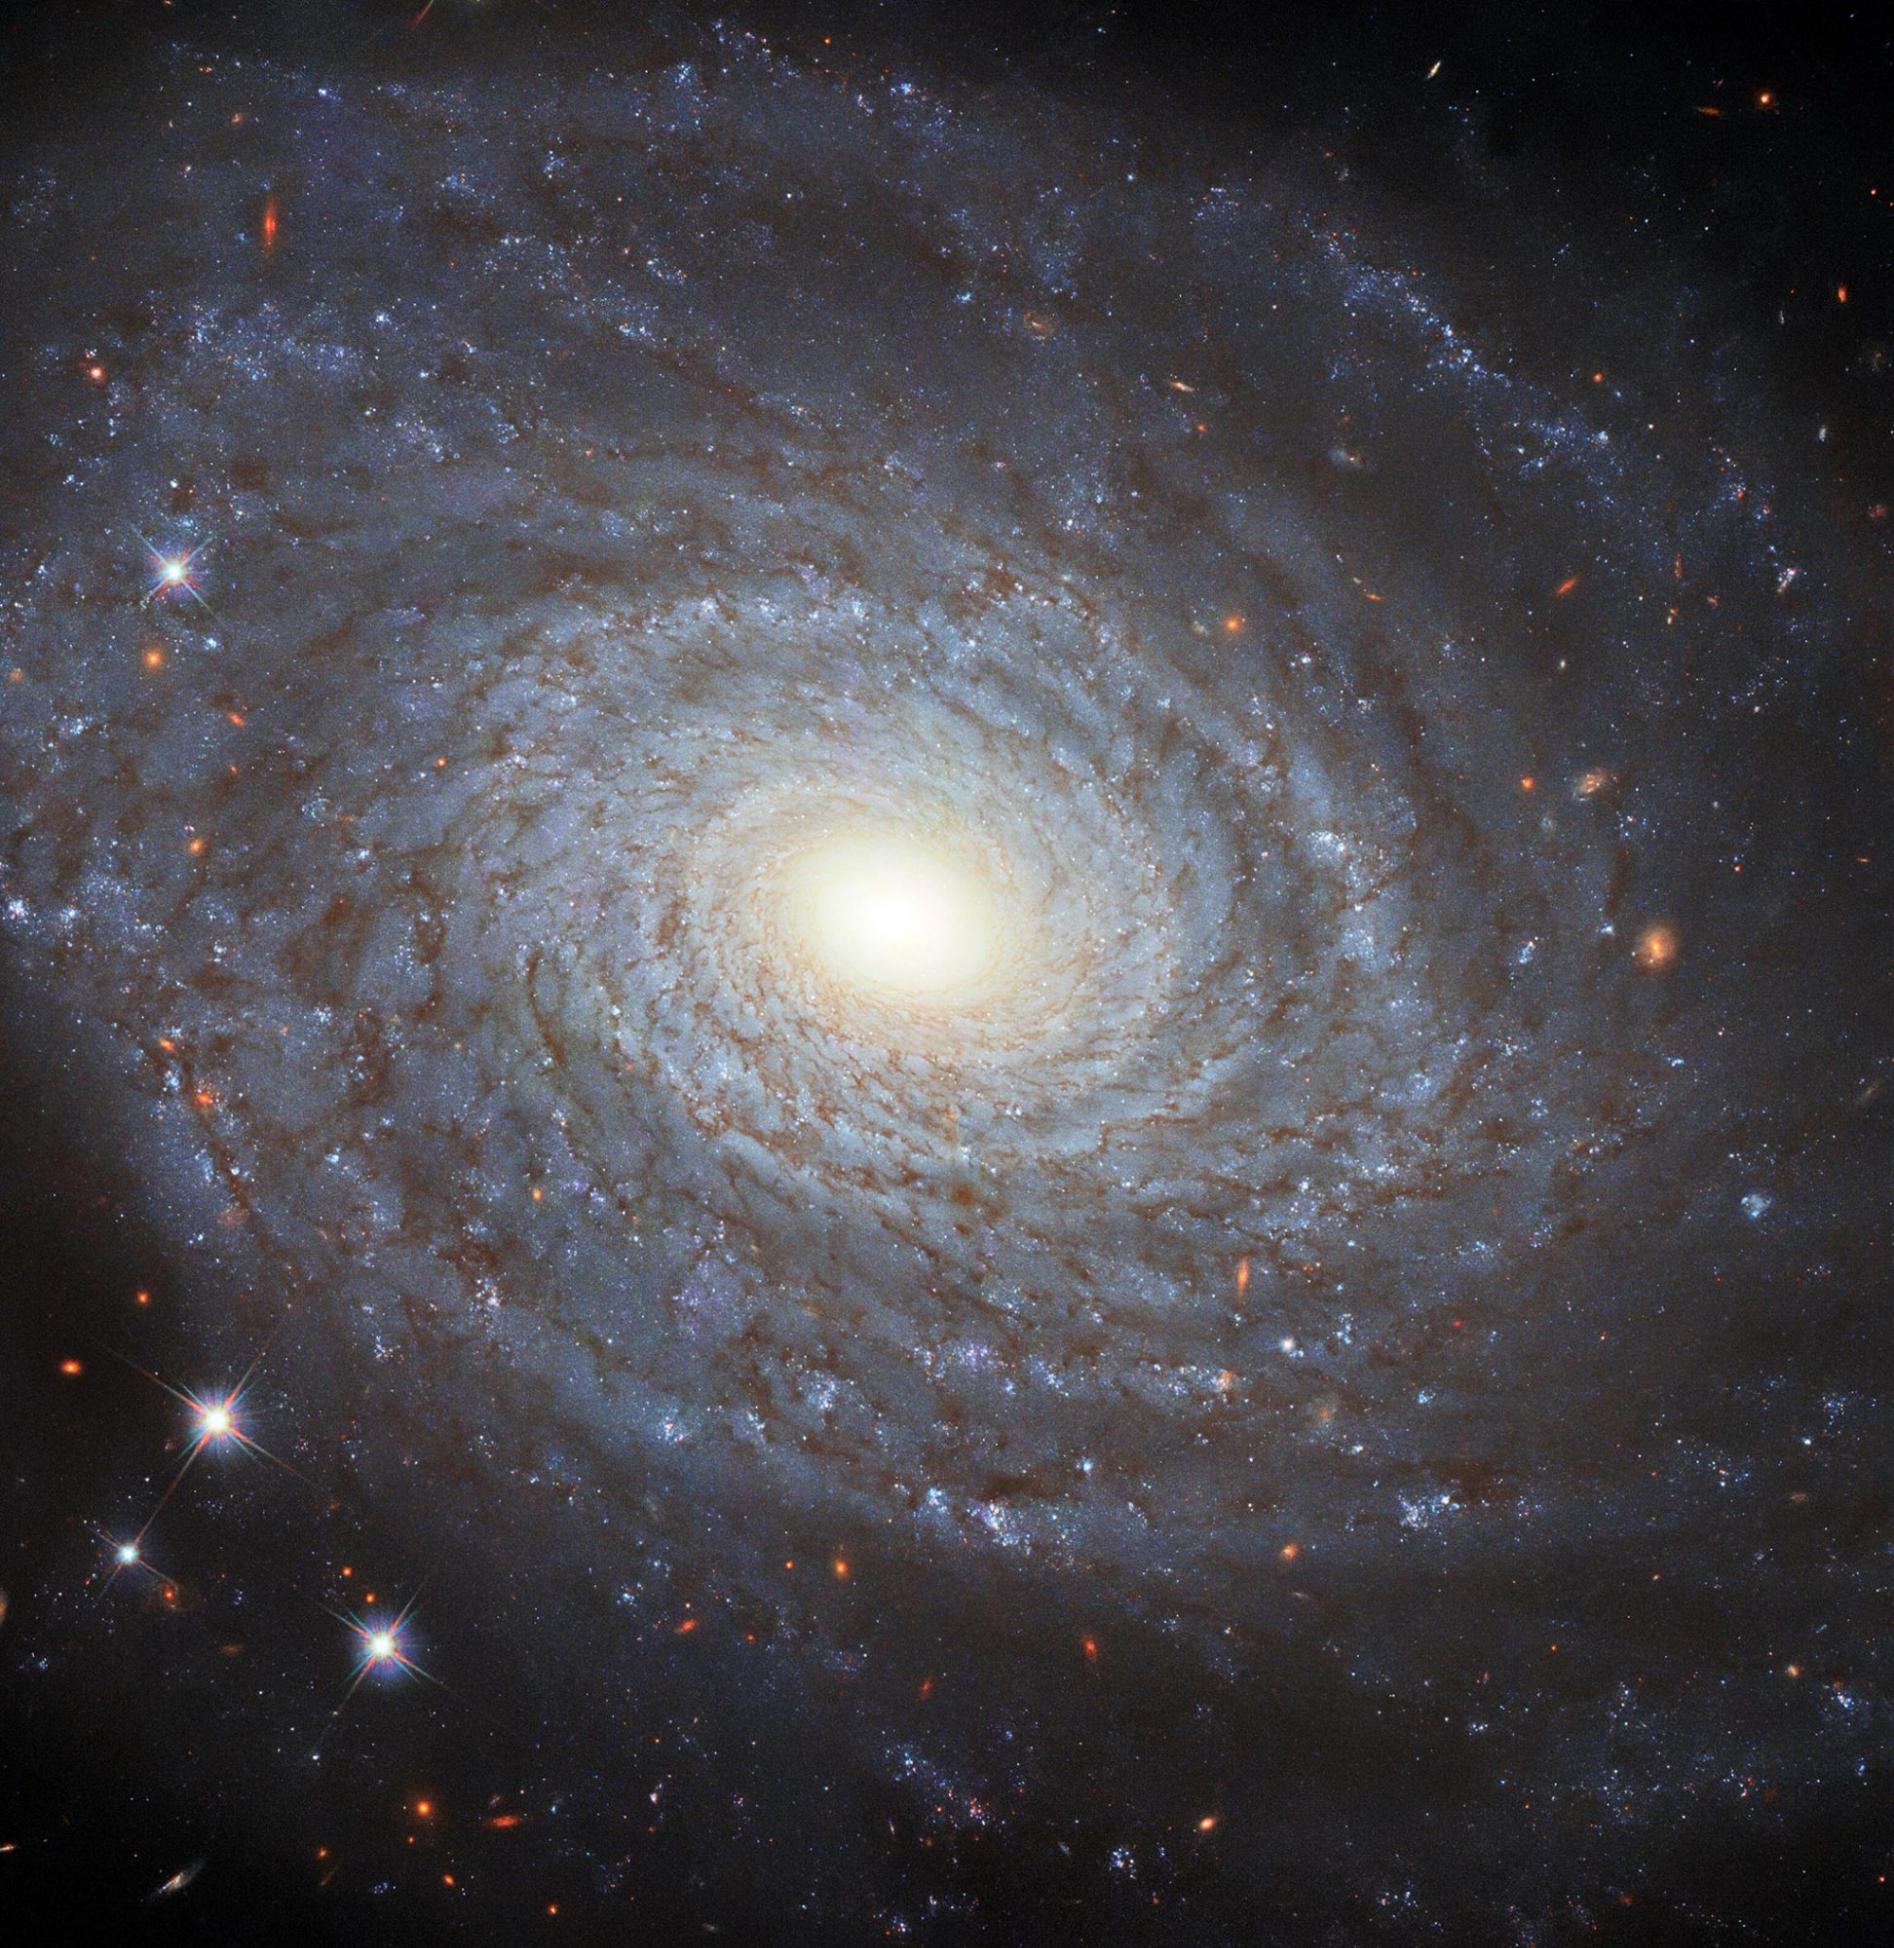 哈勃太空望远镜捕捉到NGC 691同名螺旋星系的详细画面